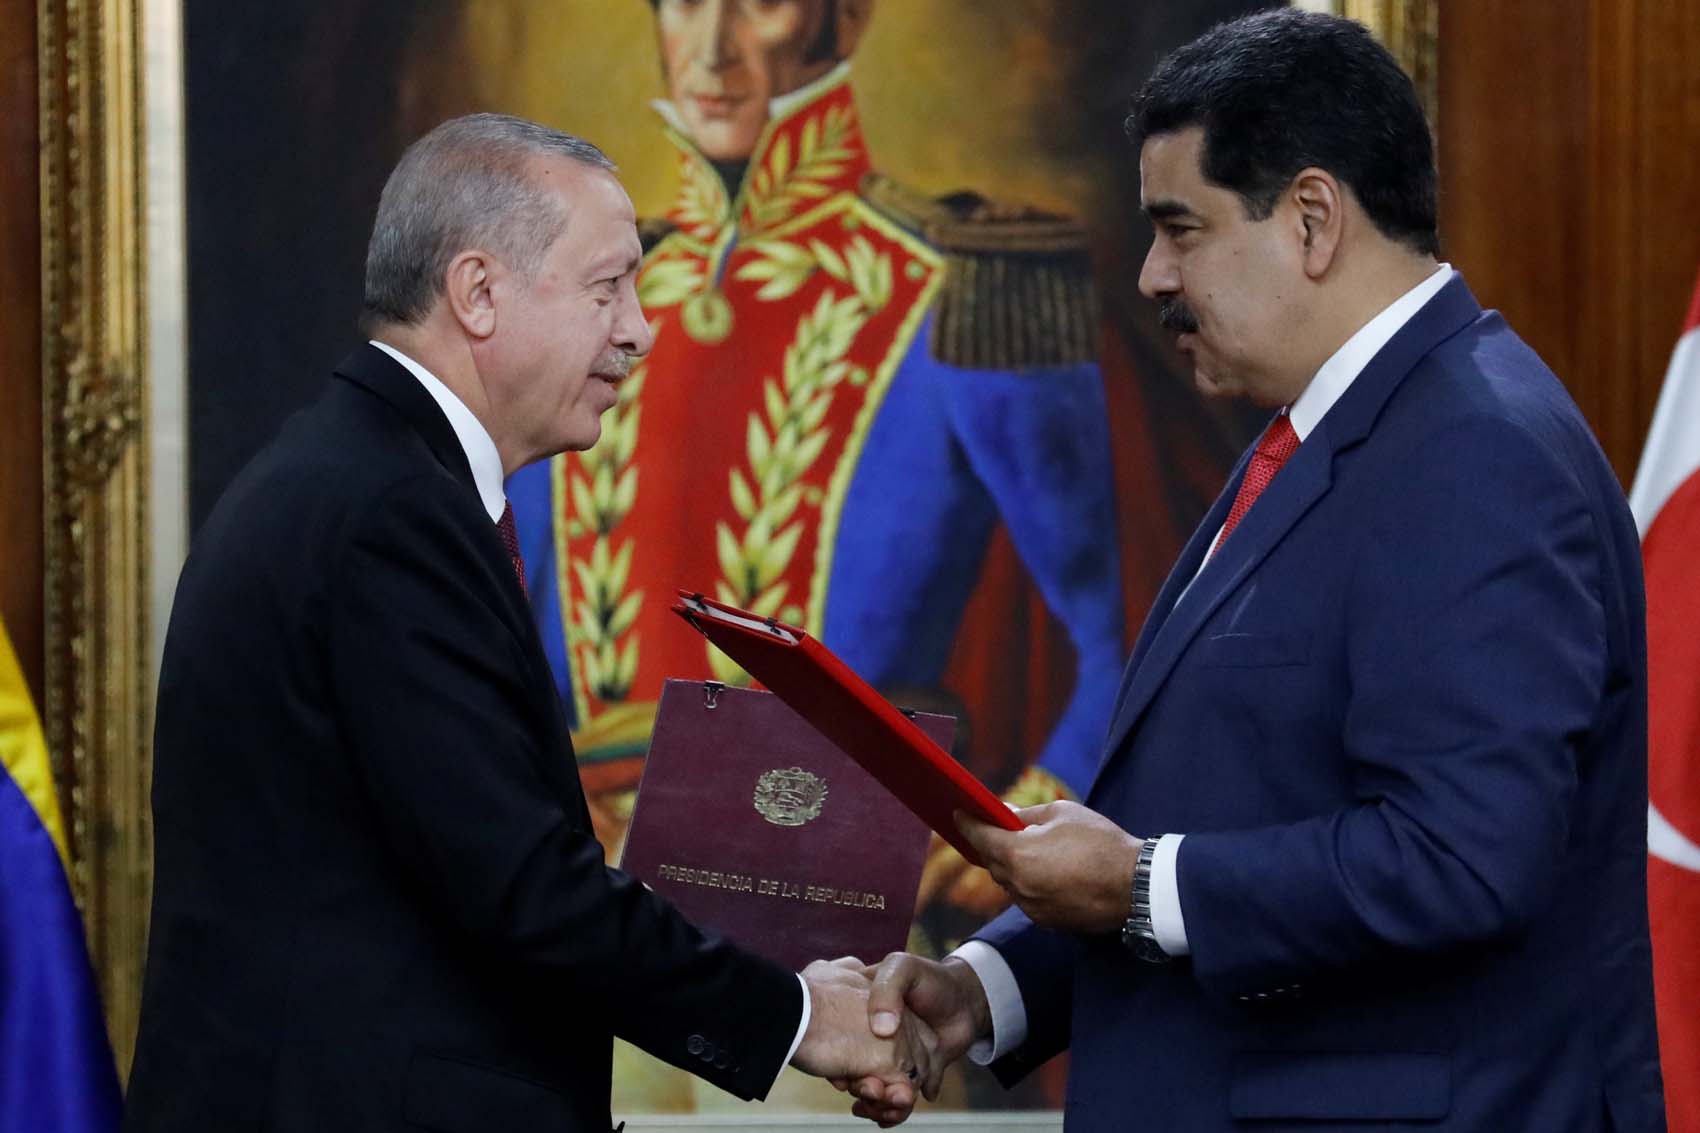 Turquía importará alimentos venezolanos libres de aranceles tras otro acuerdo turbio con Maduro